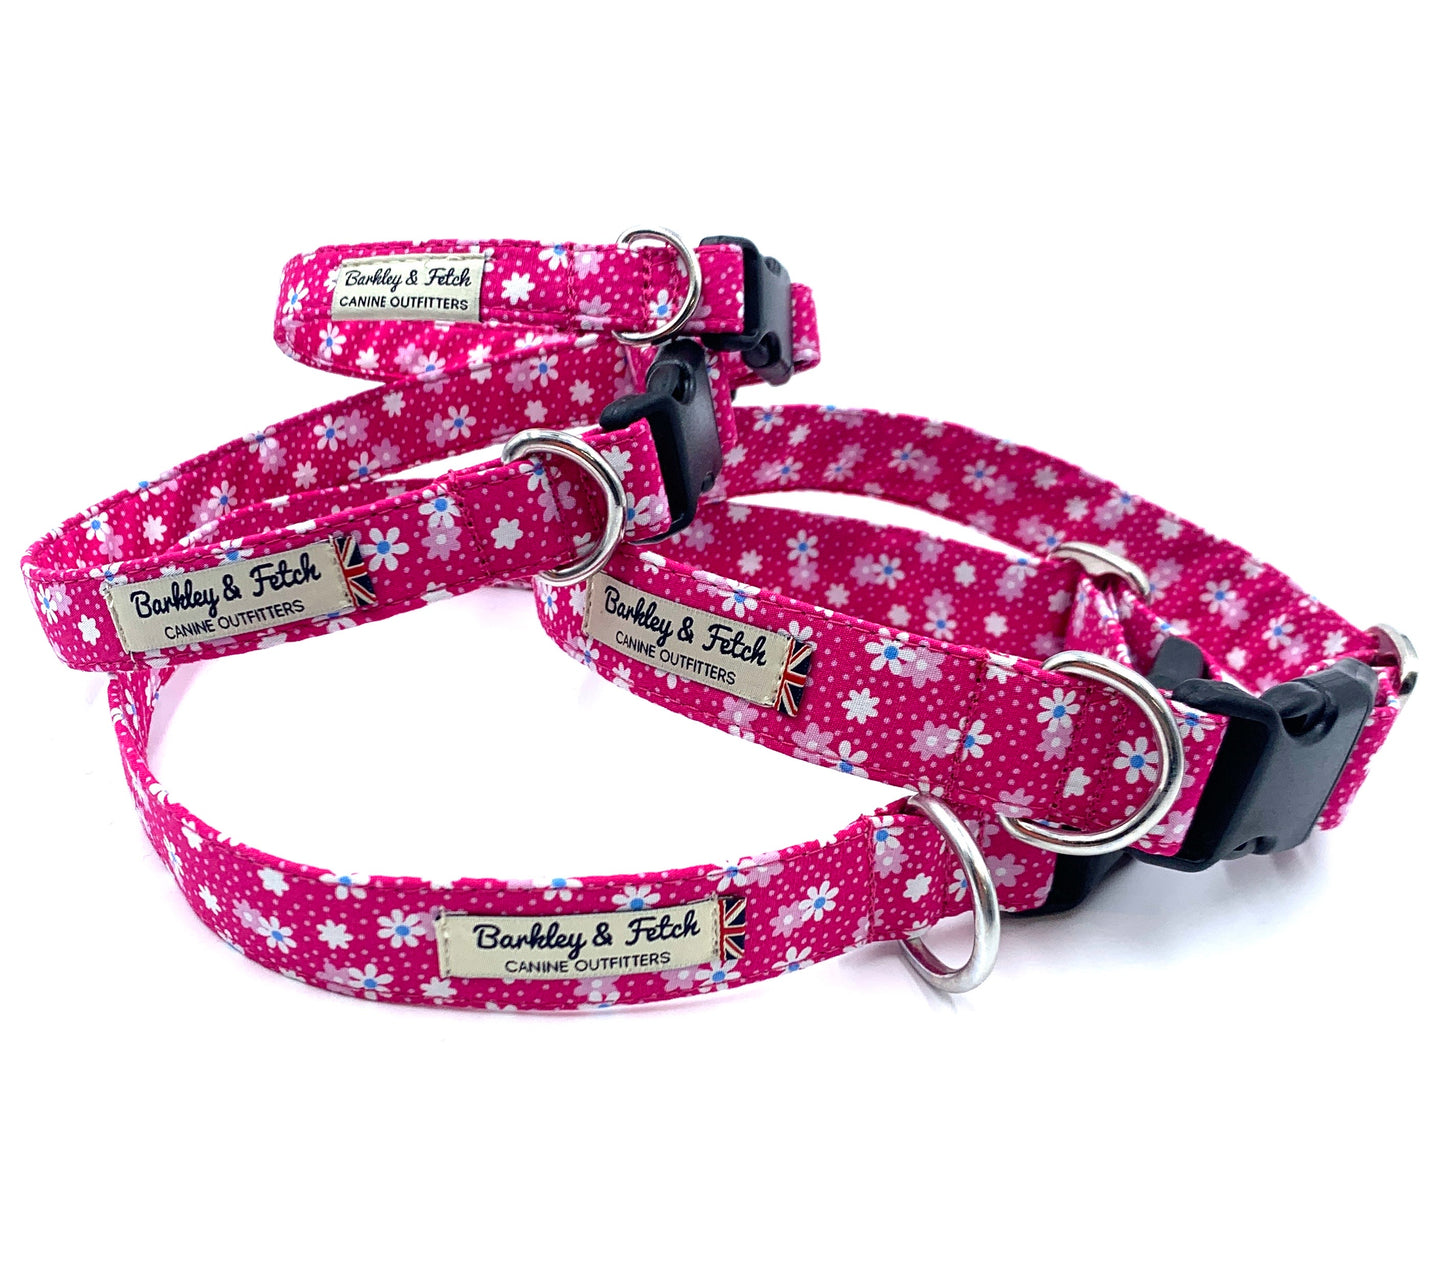 Hot Pink Floral Print Dog Collar